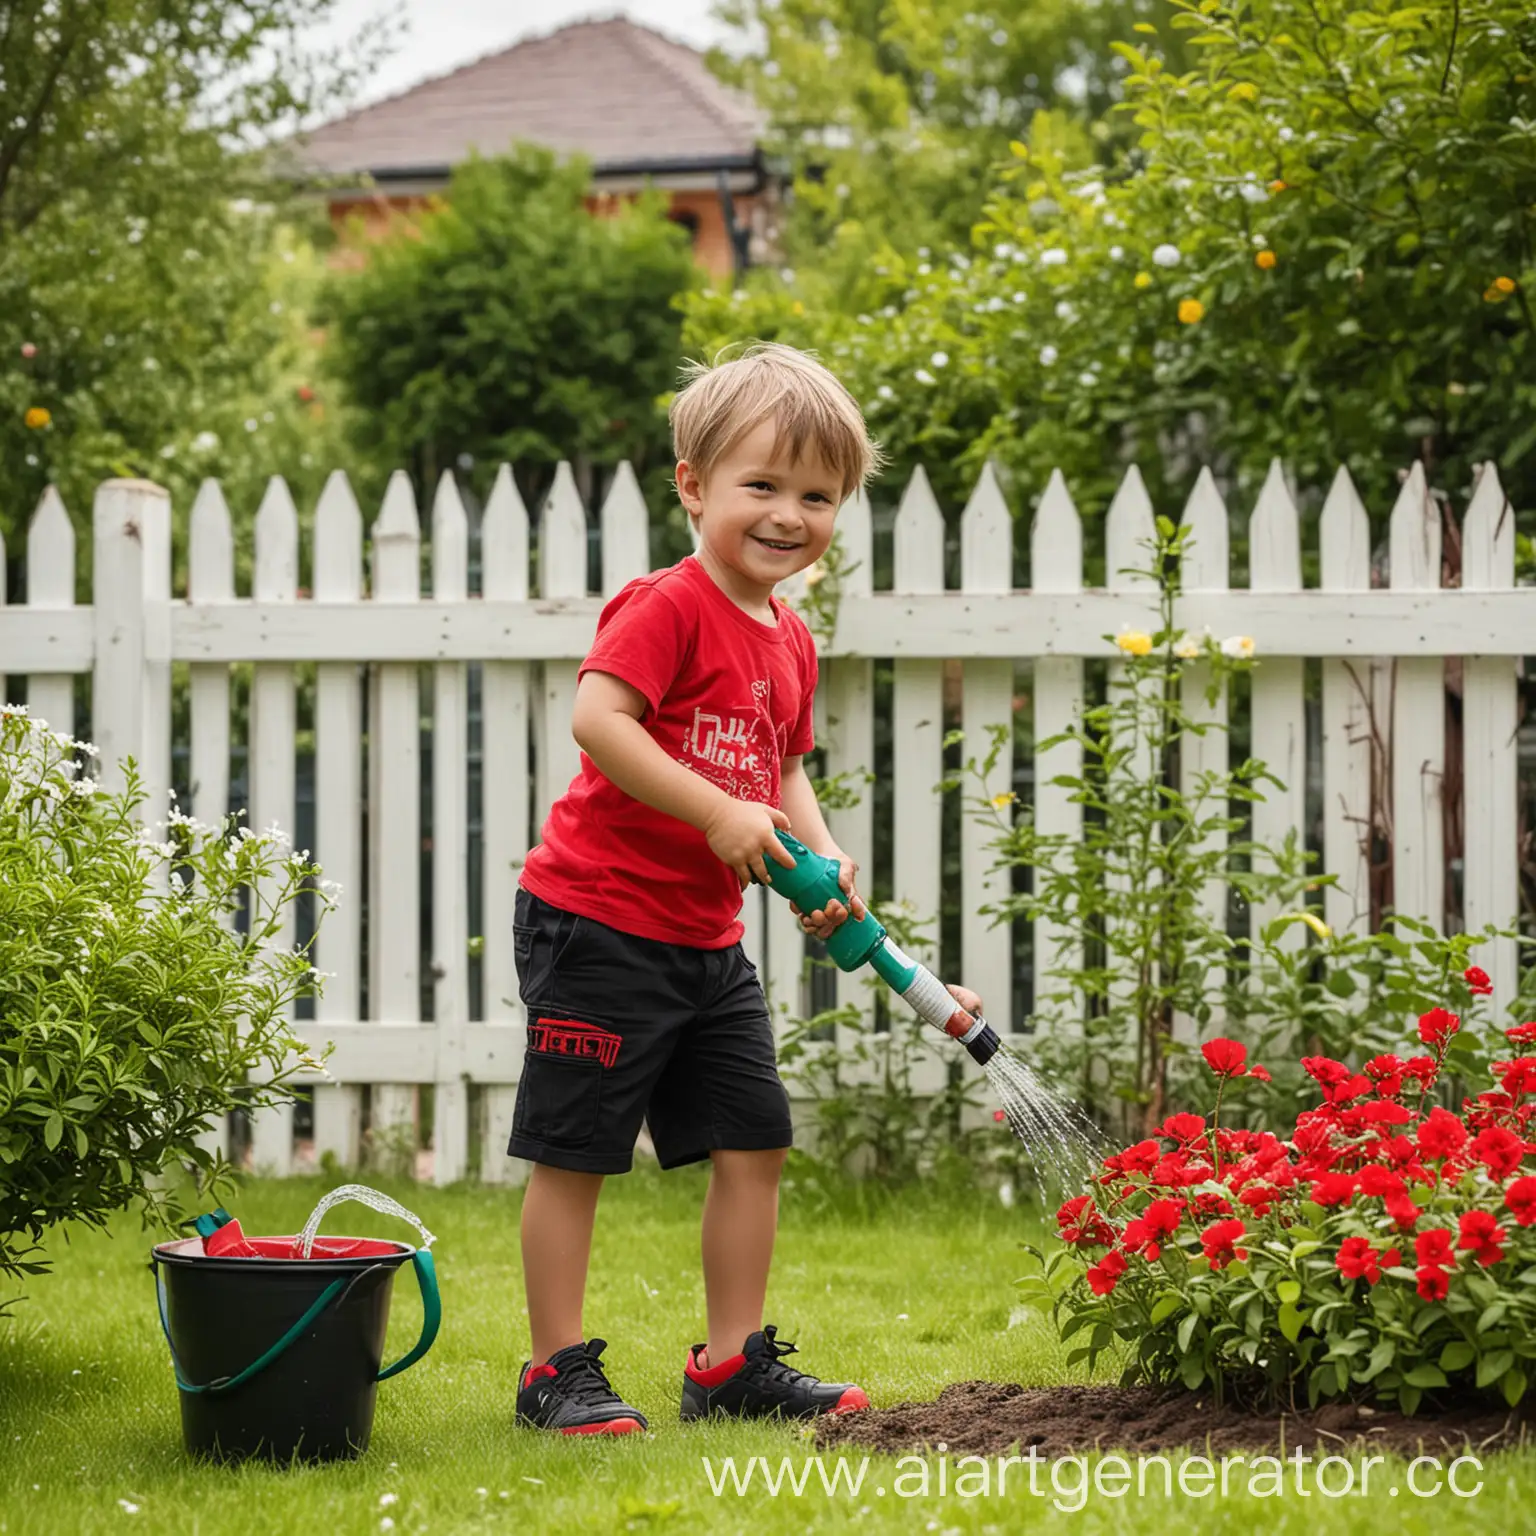 Реальная фотография. Мальчик, 4 года, в чёрных шортах и красной футболке поливает саженец дерева. Мальчик улыбается. На заднем плане газон и цветы, забор, лето.